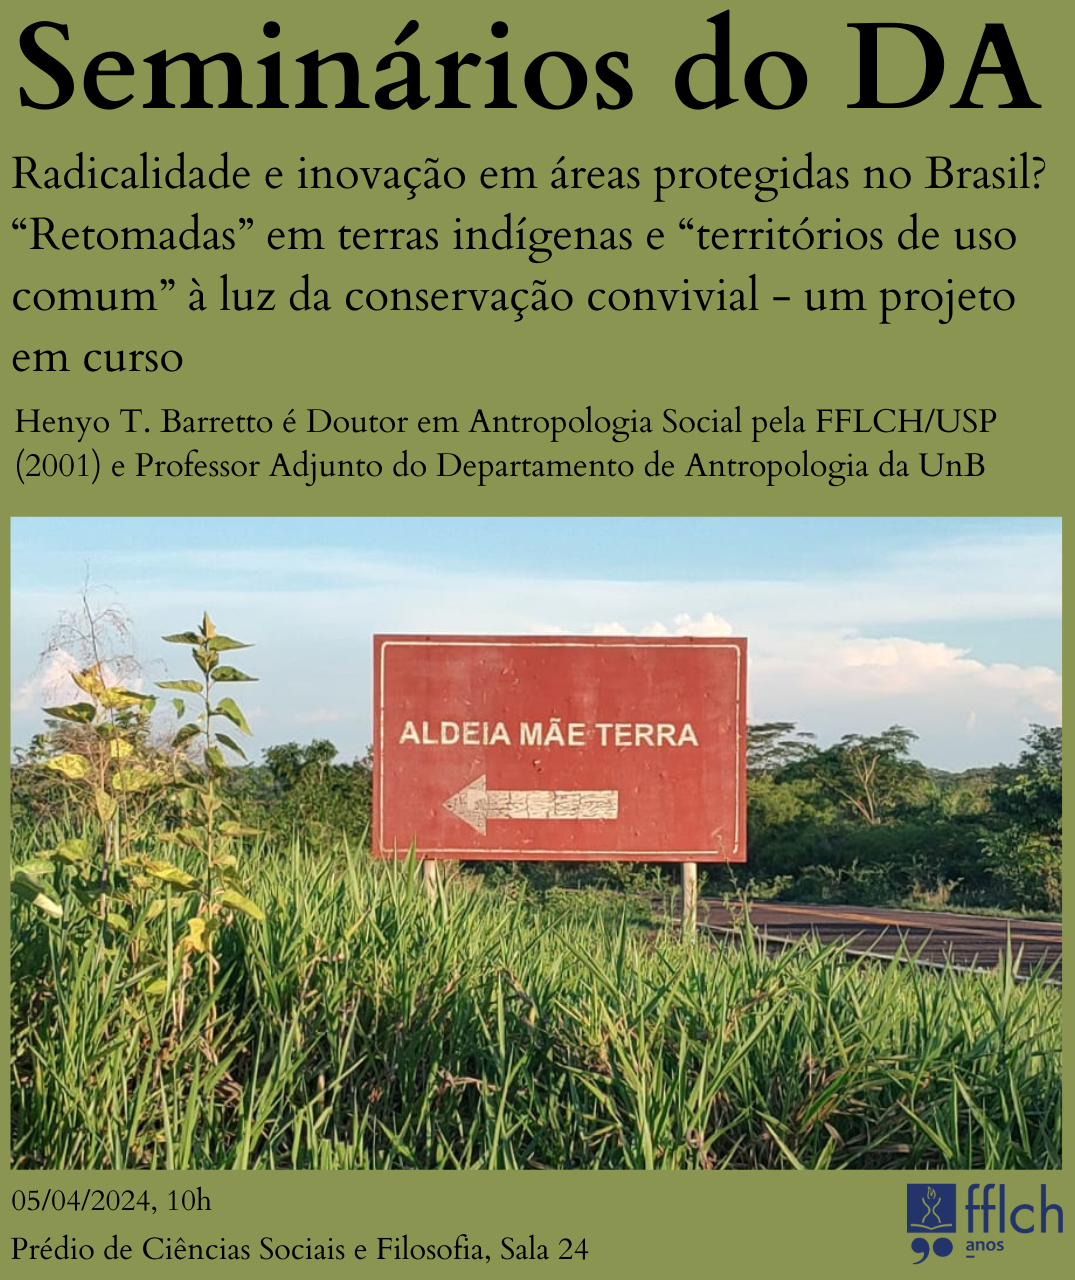 Seminários do DA - Radicalidade e inovação em áreas protegidas no Brasil? “Retomadas” em terras indígenas e “territórios de uso comum” à luz da conservação convivial - um projeto em curso